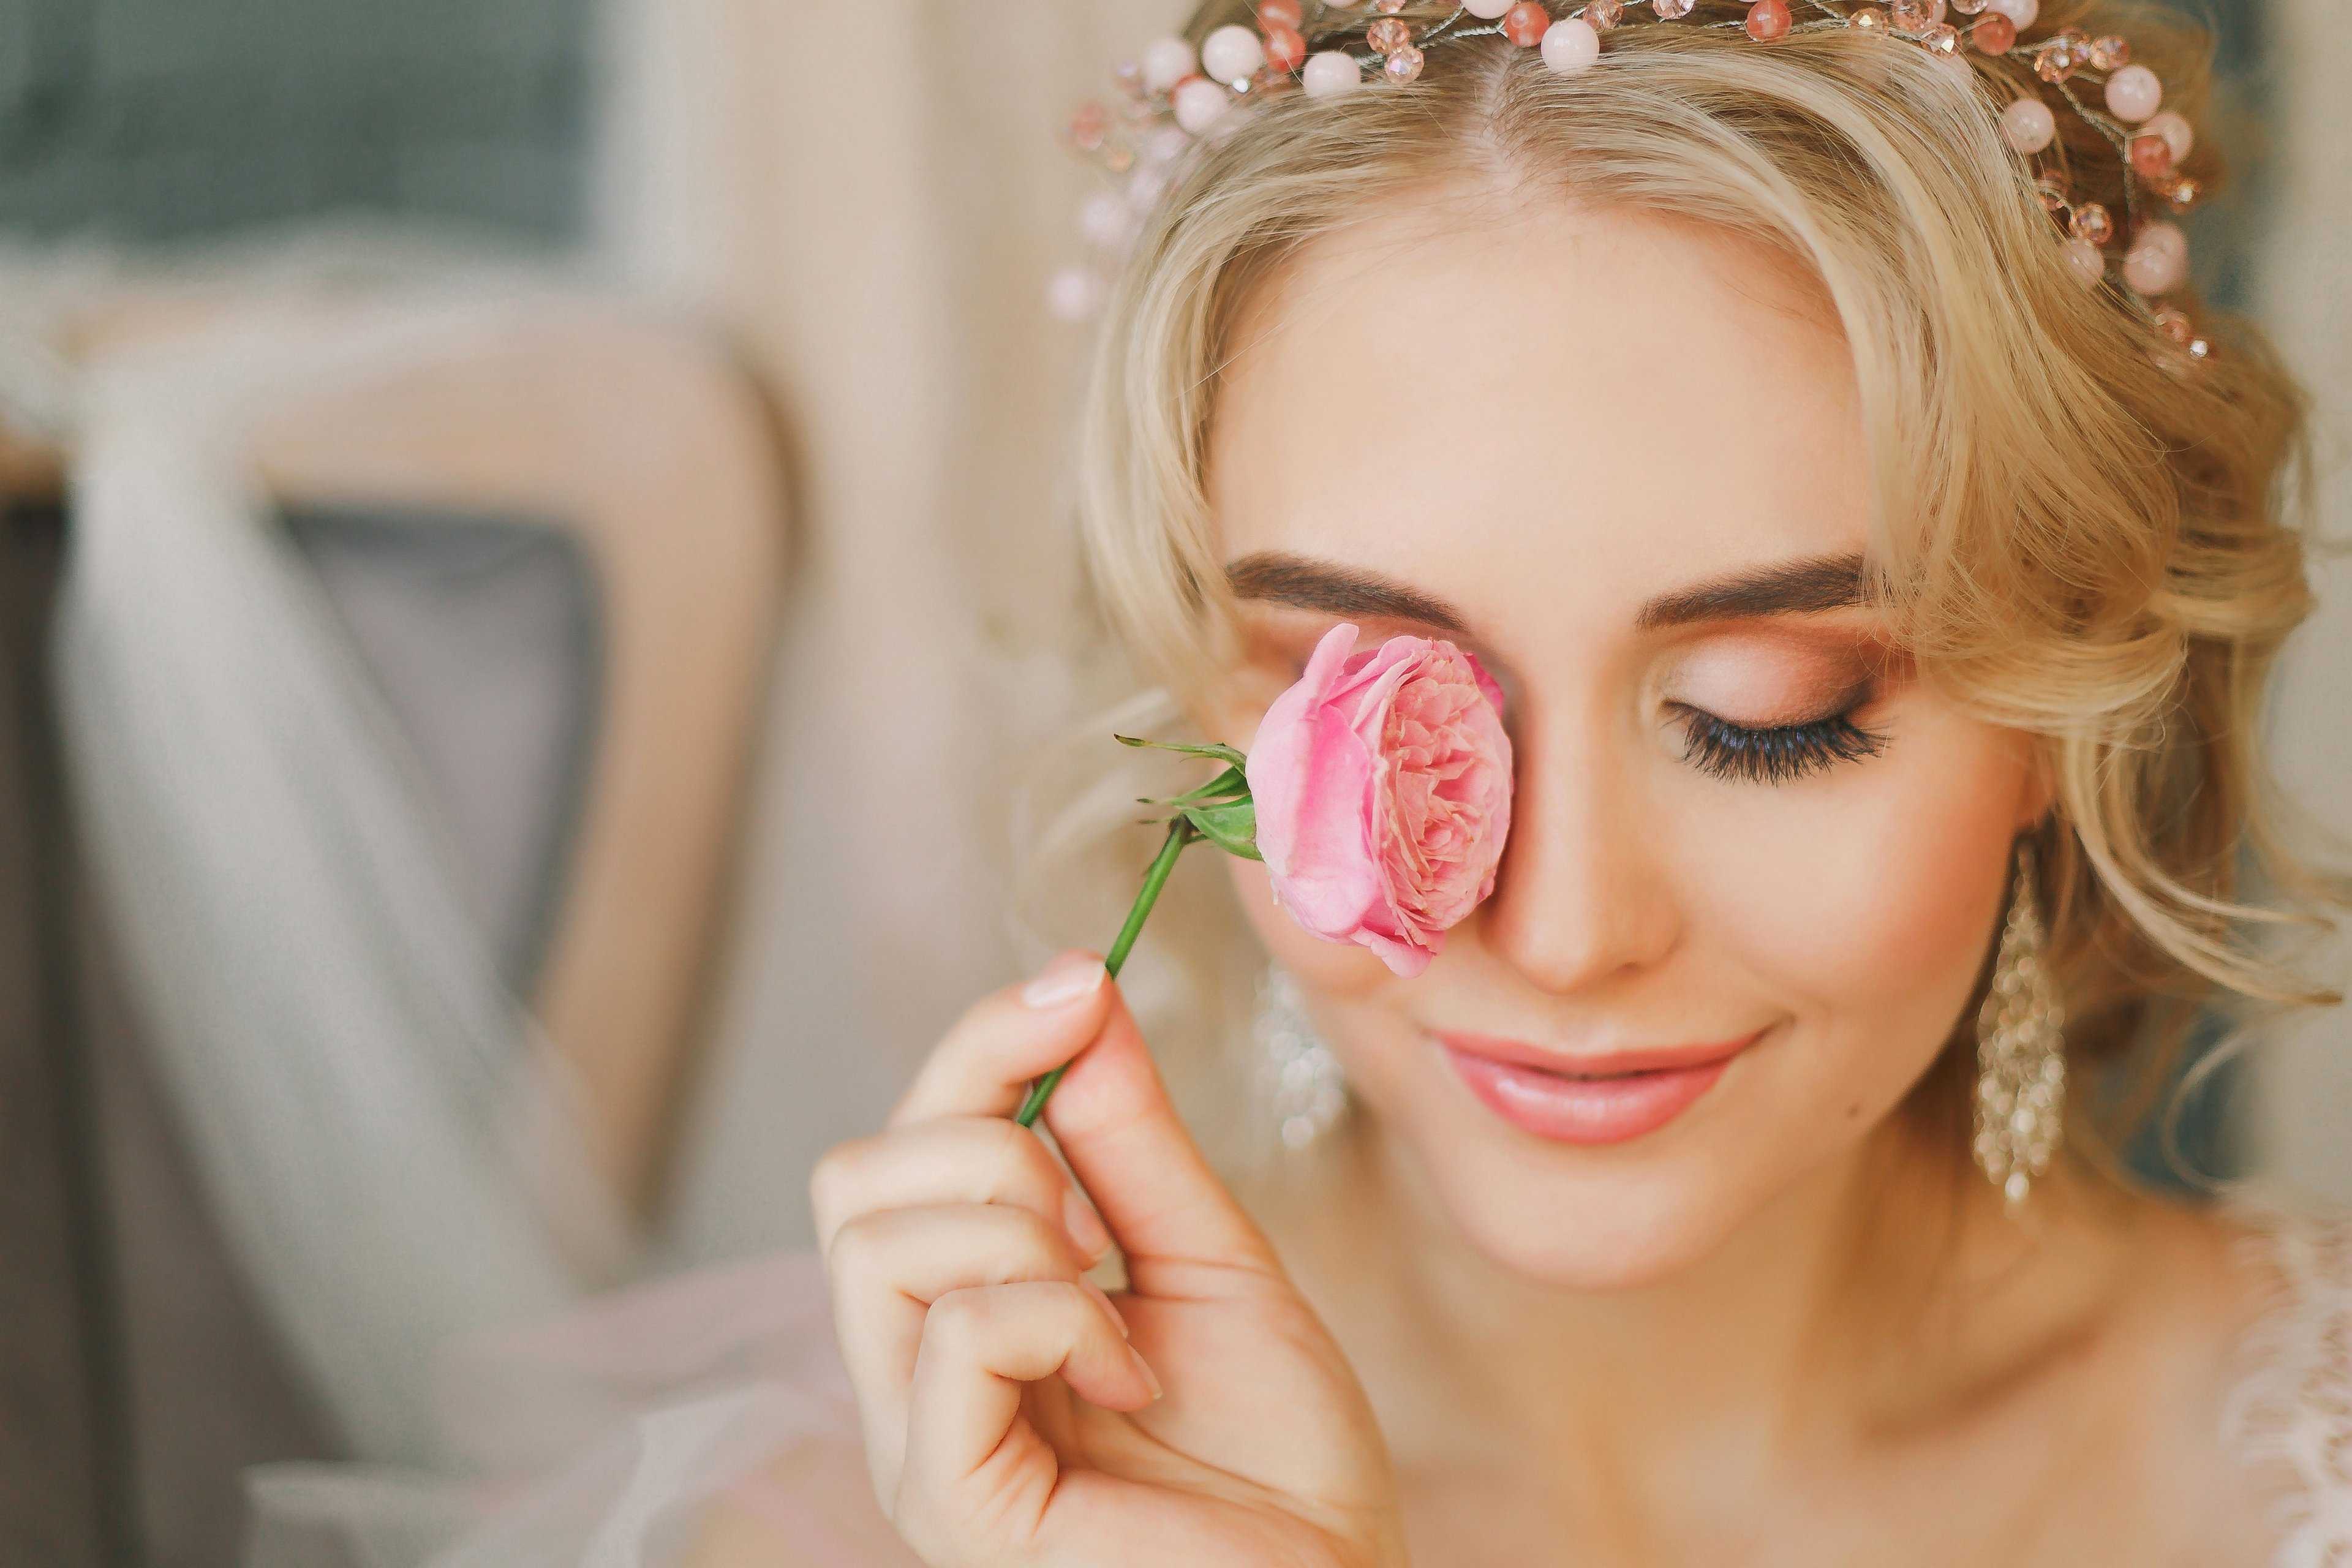 Как сделать естественный свадебный макияж в стиле нюд – советы